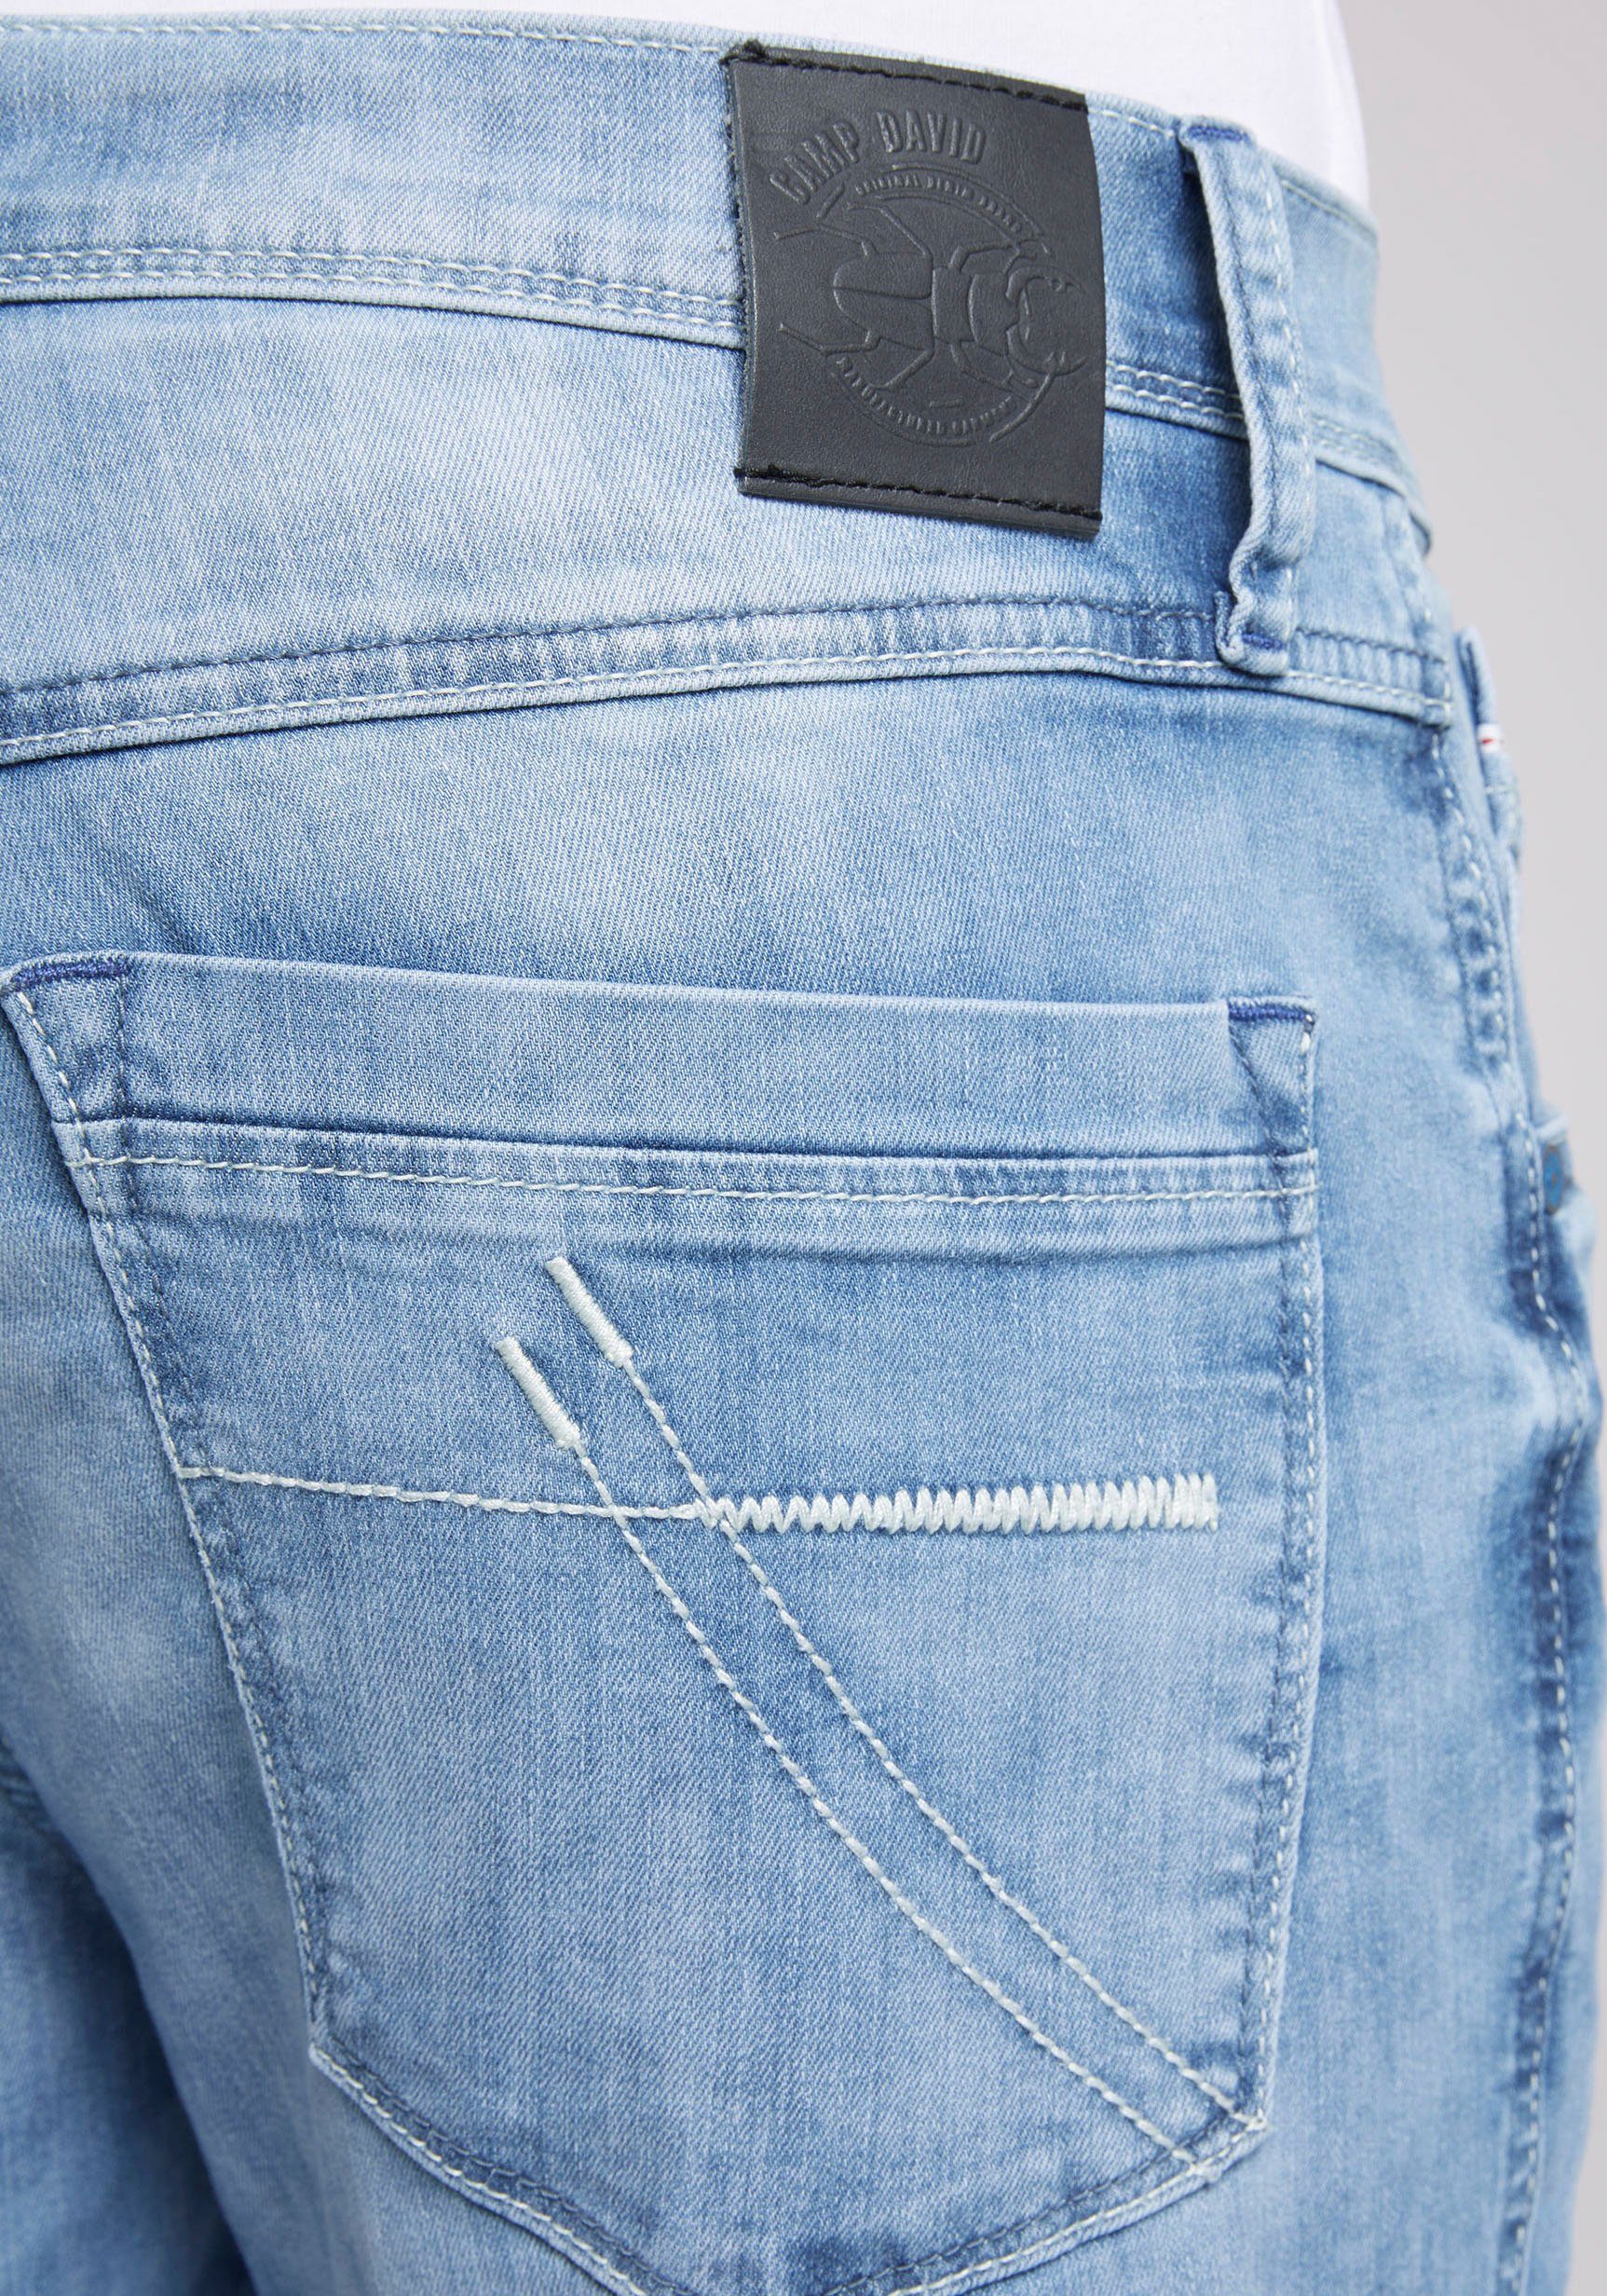 wash DAVID mit Nähten dünnen CAMP 5-Pocket-Jeans blue